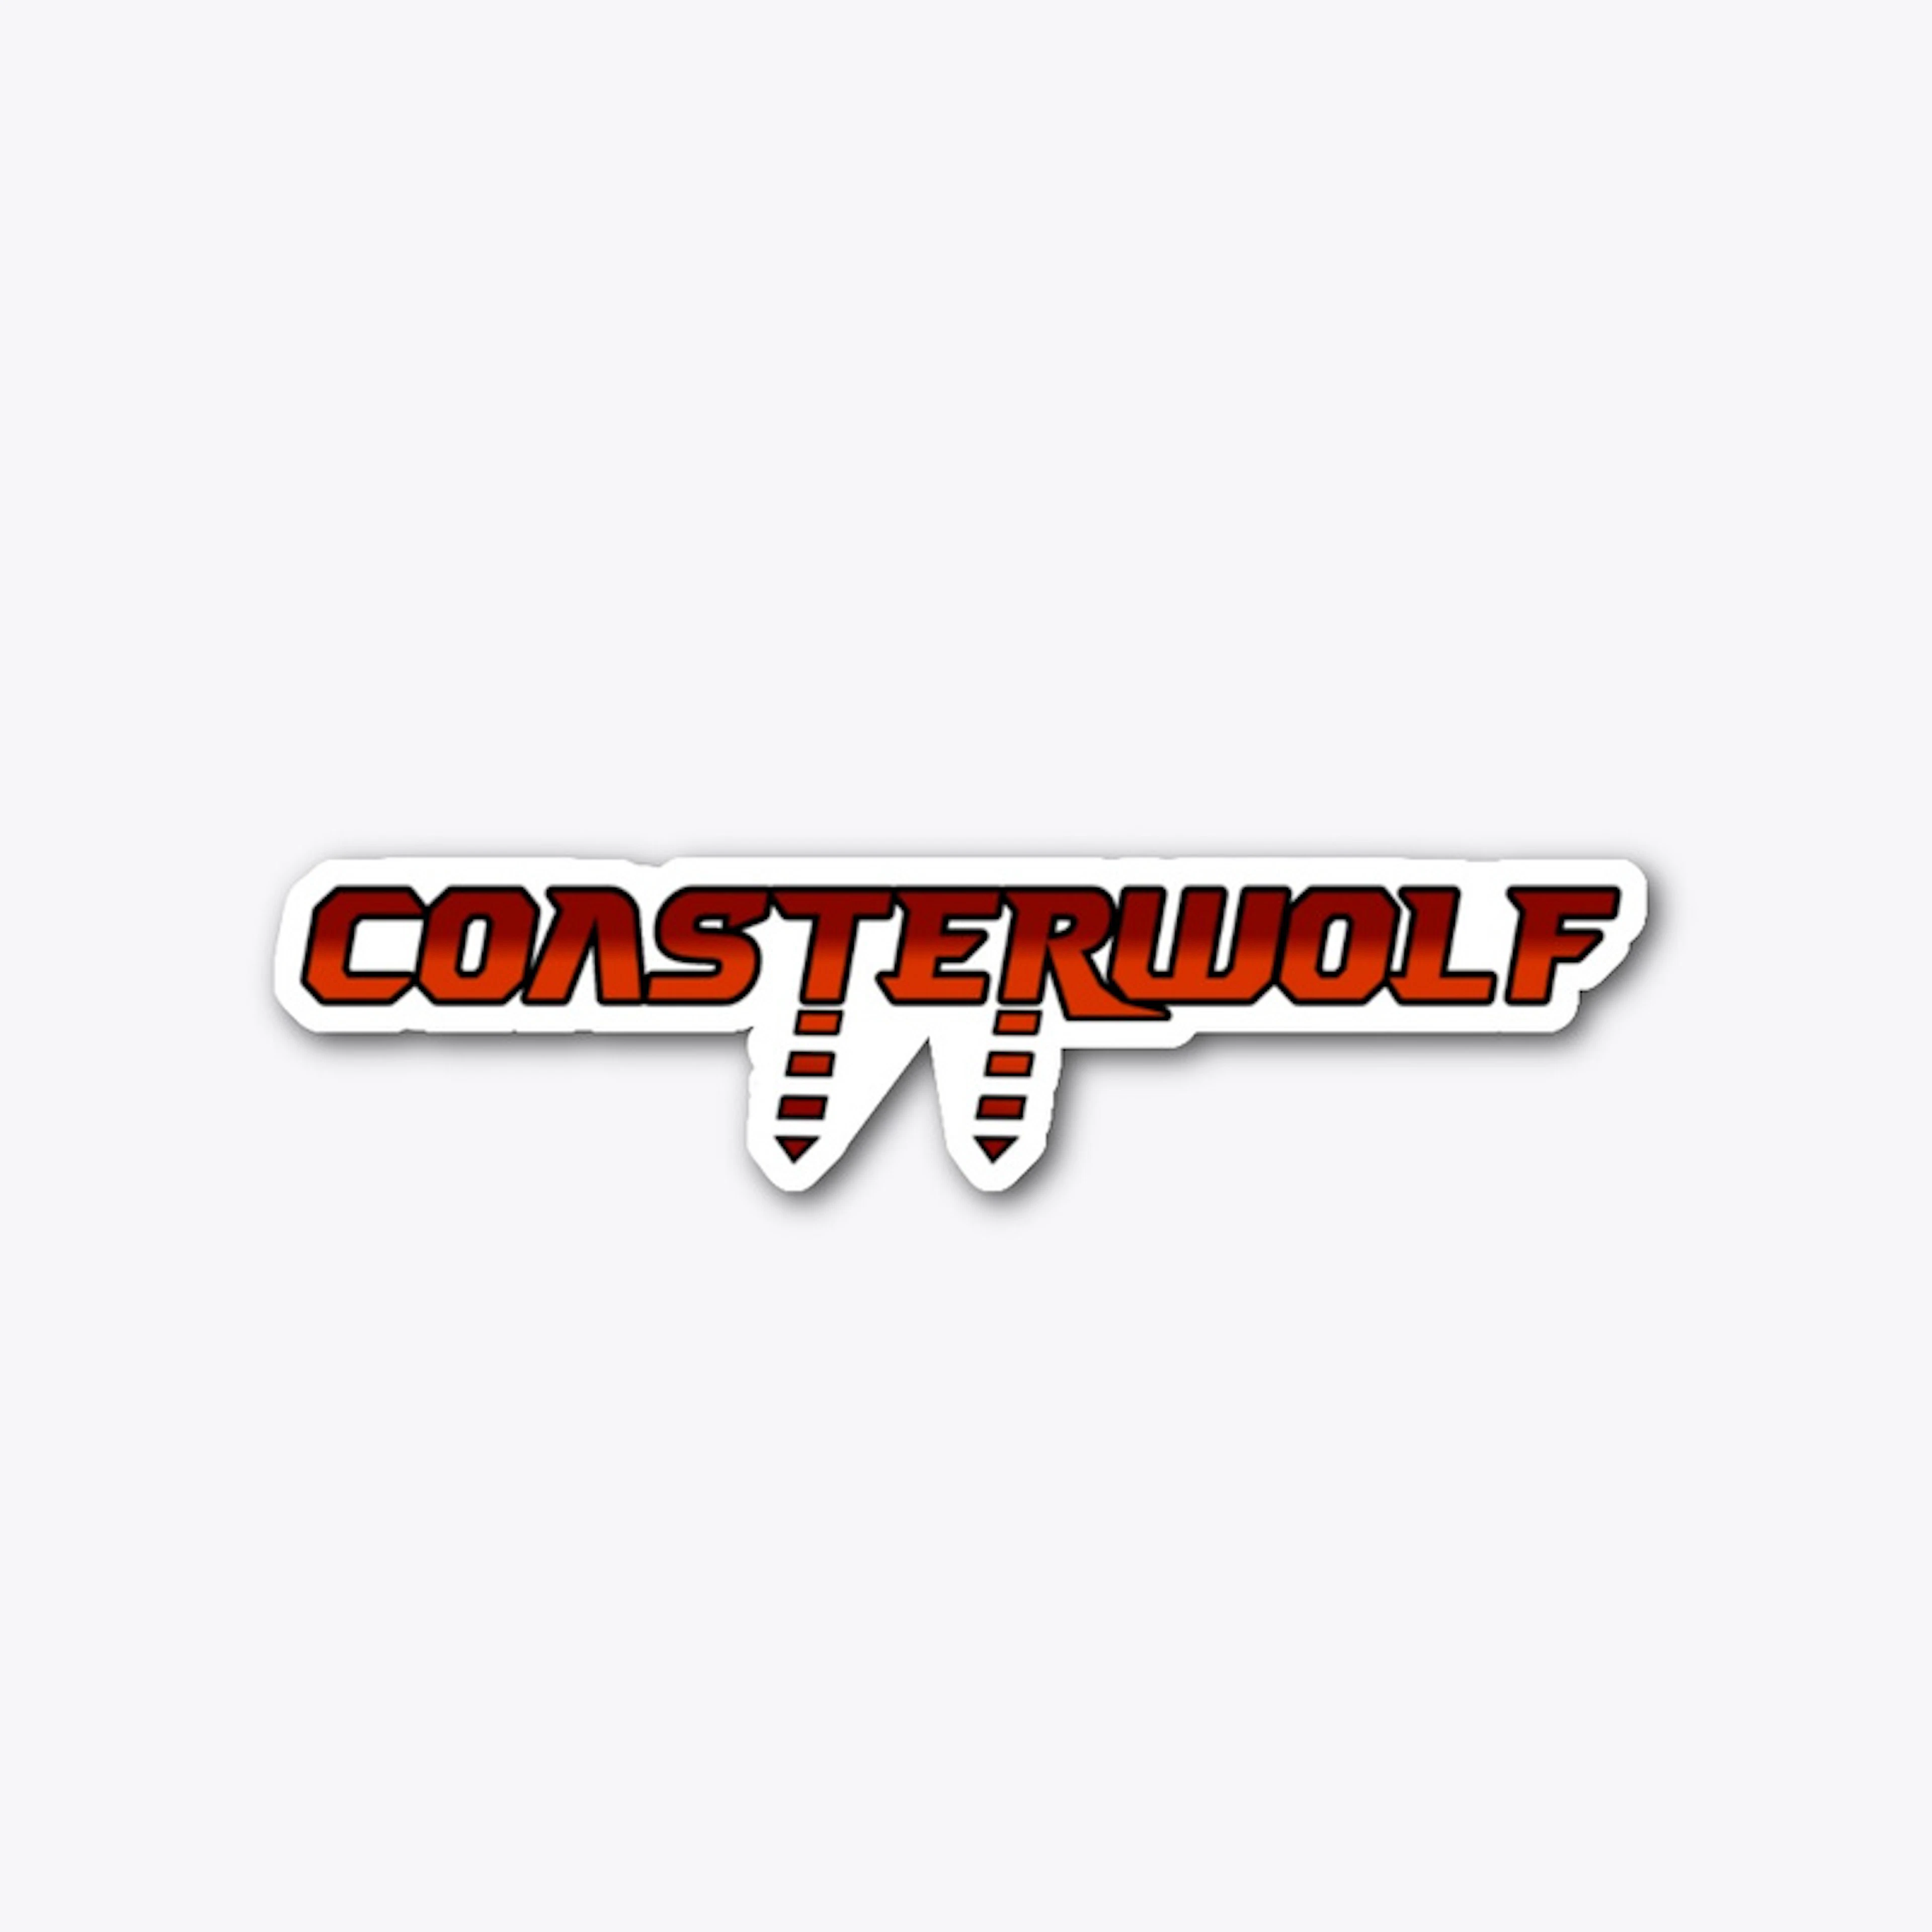 Coasterwolf Die Cut Sticker design 2